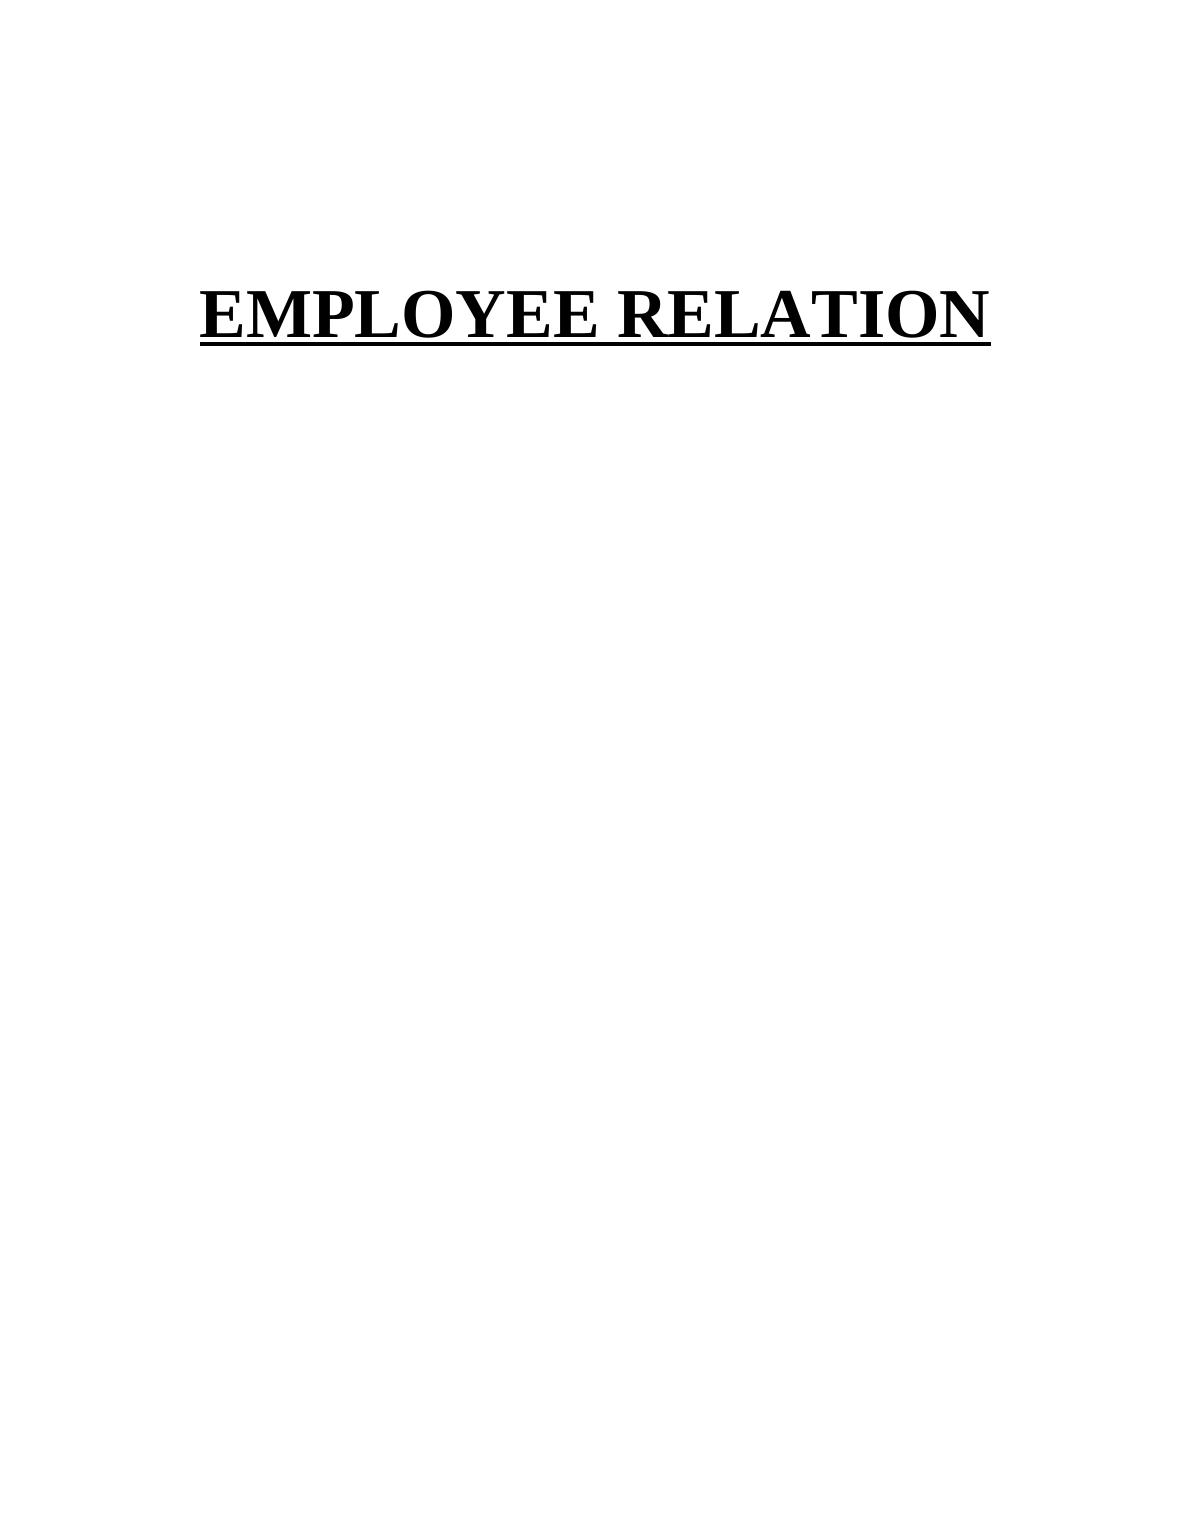 Employee relations in John Lewis partnership_1